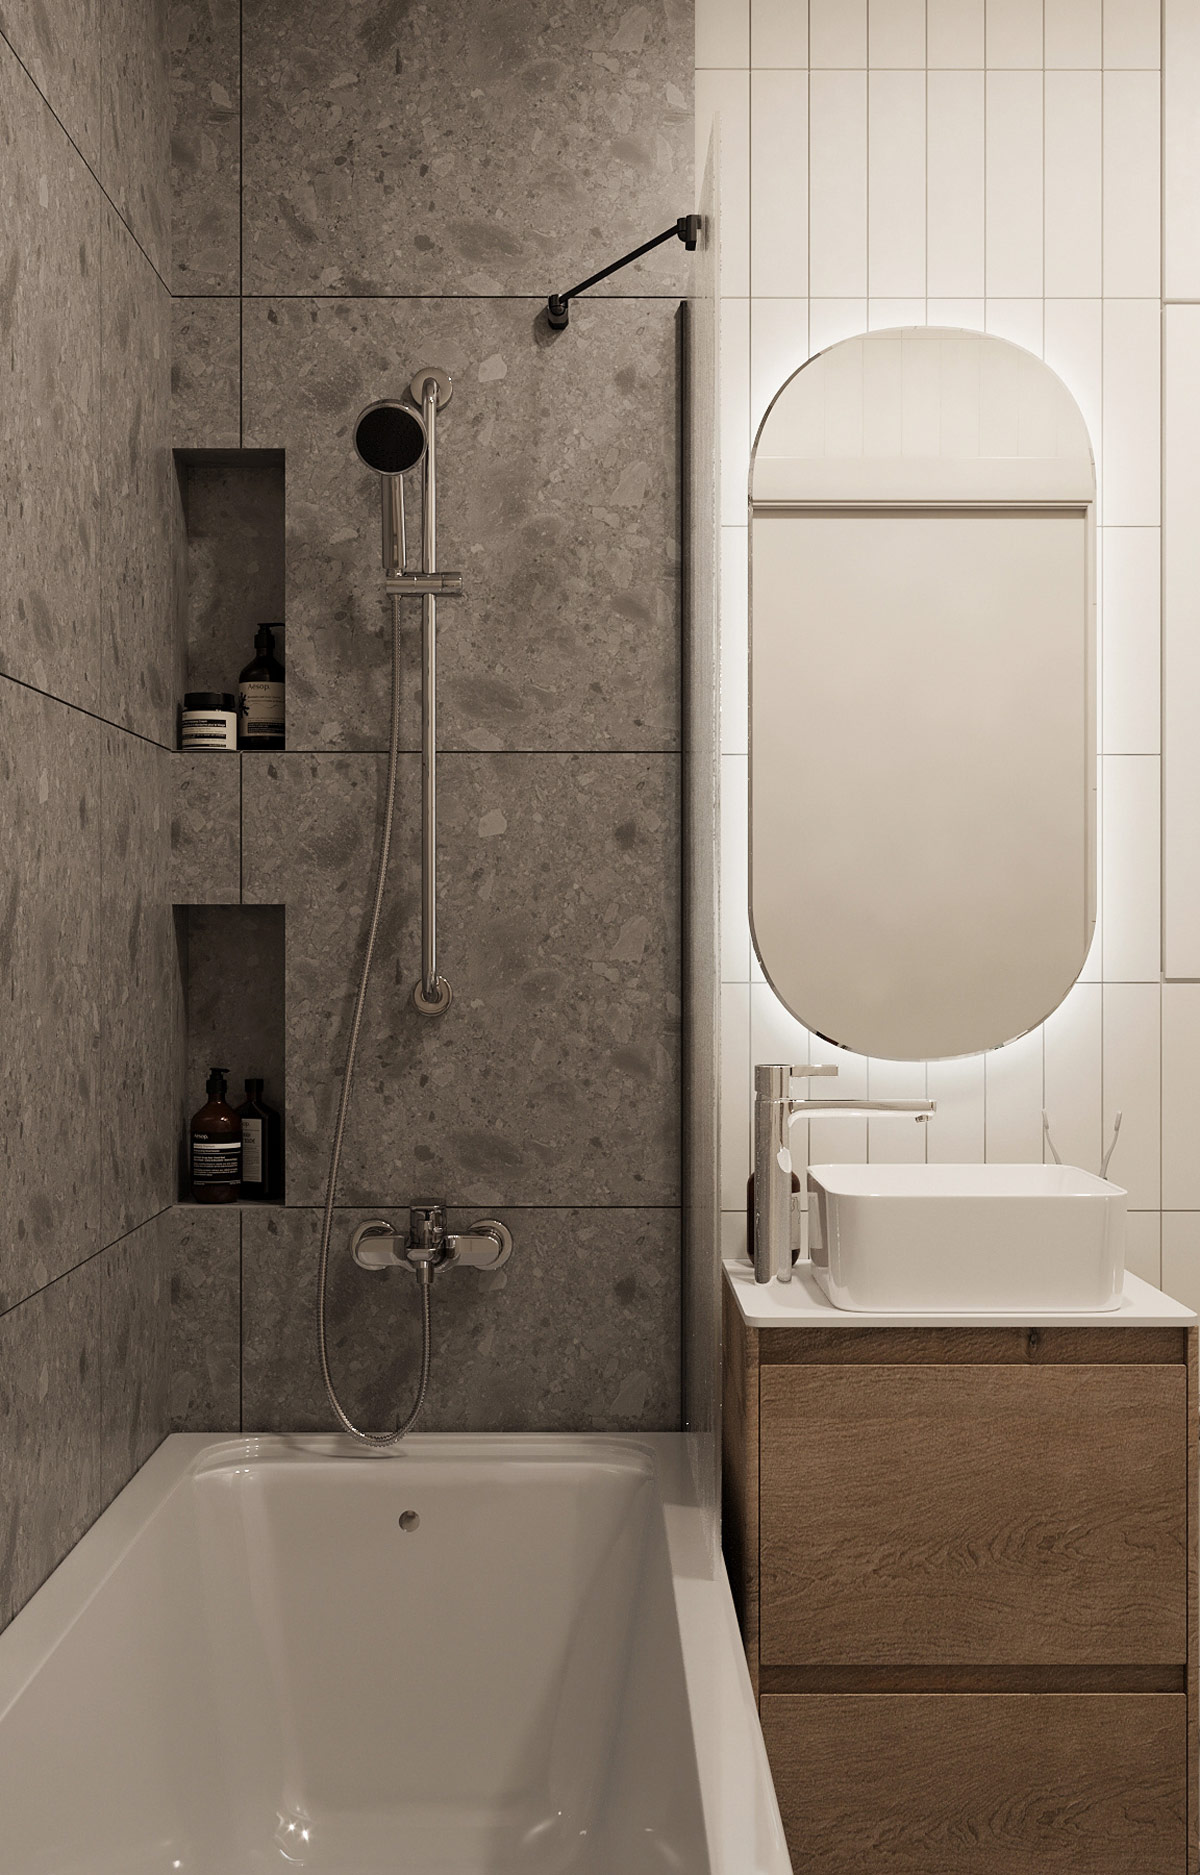 Gạch đá granite bao phủ sàn và tường phòng tắm căn hộ thoáng sạch.